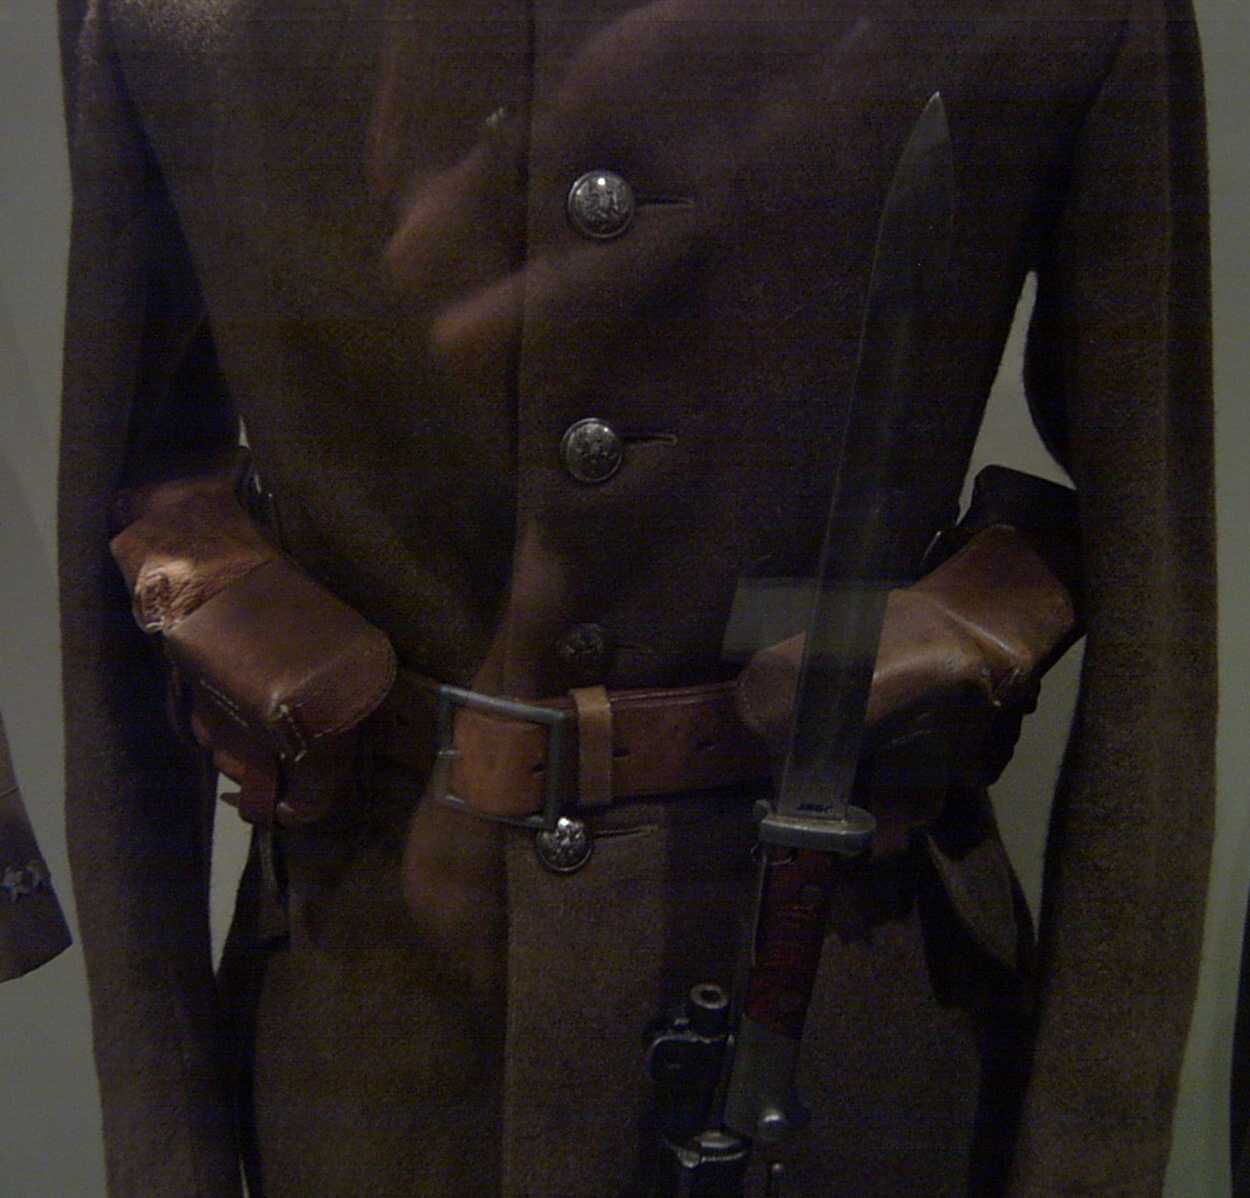 official 1919 uniform